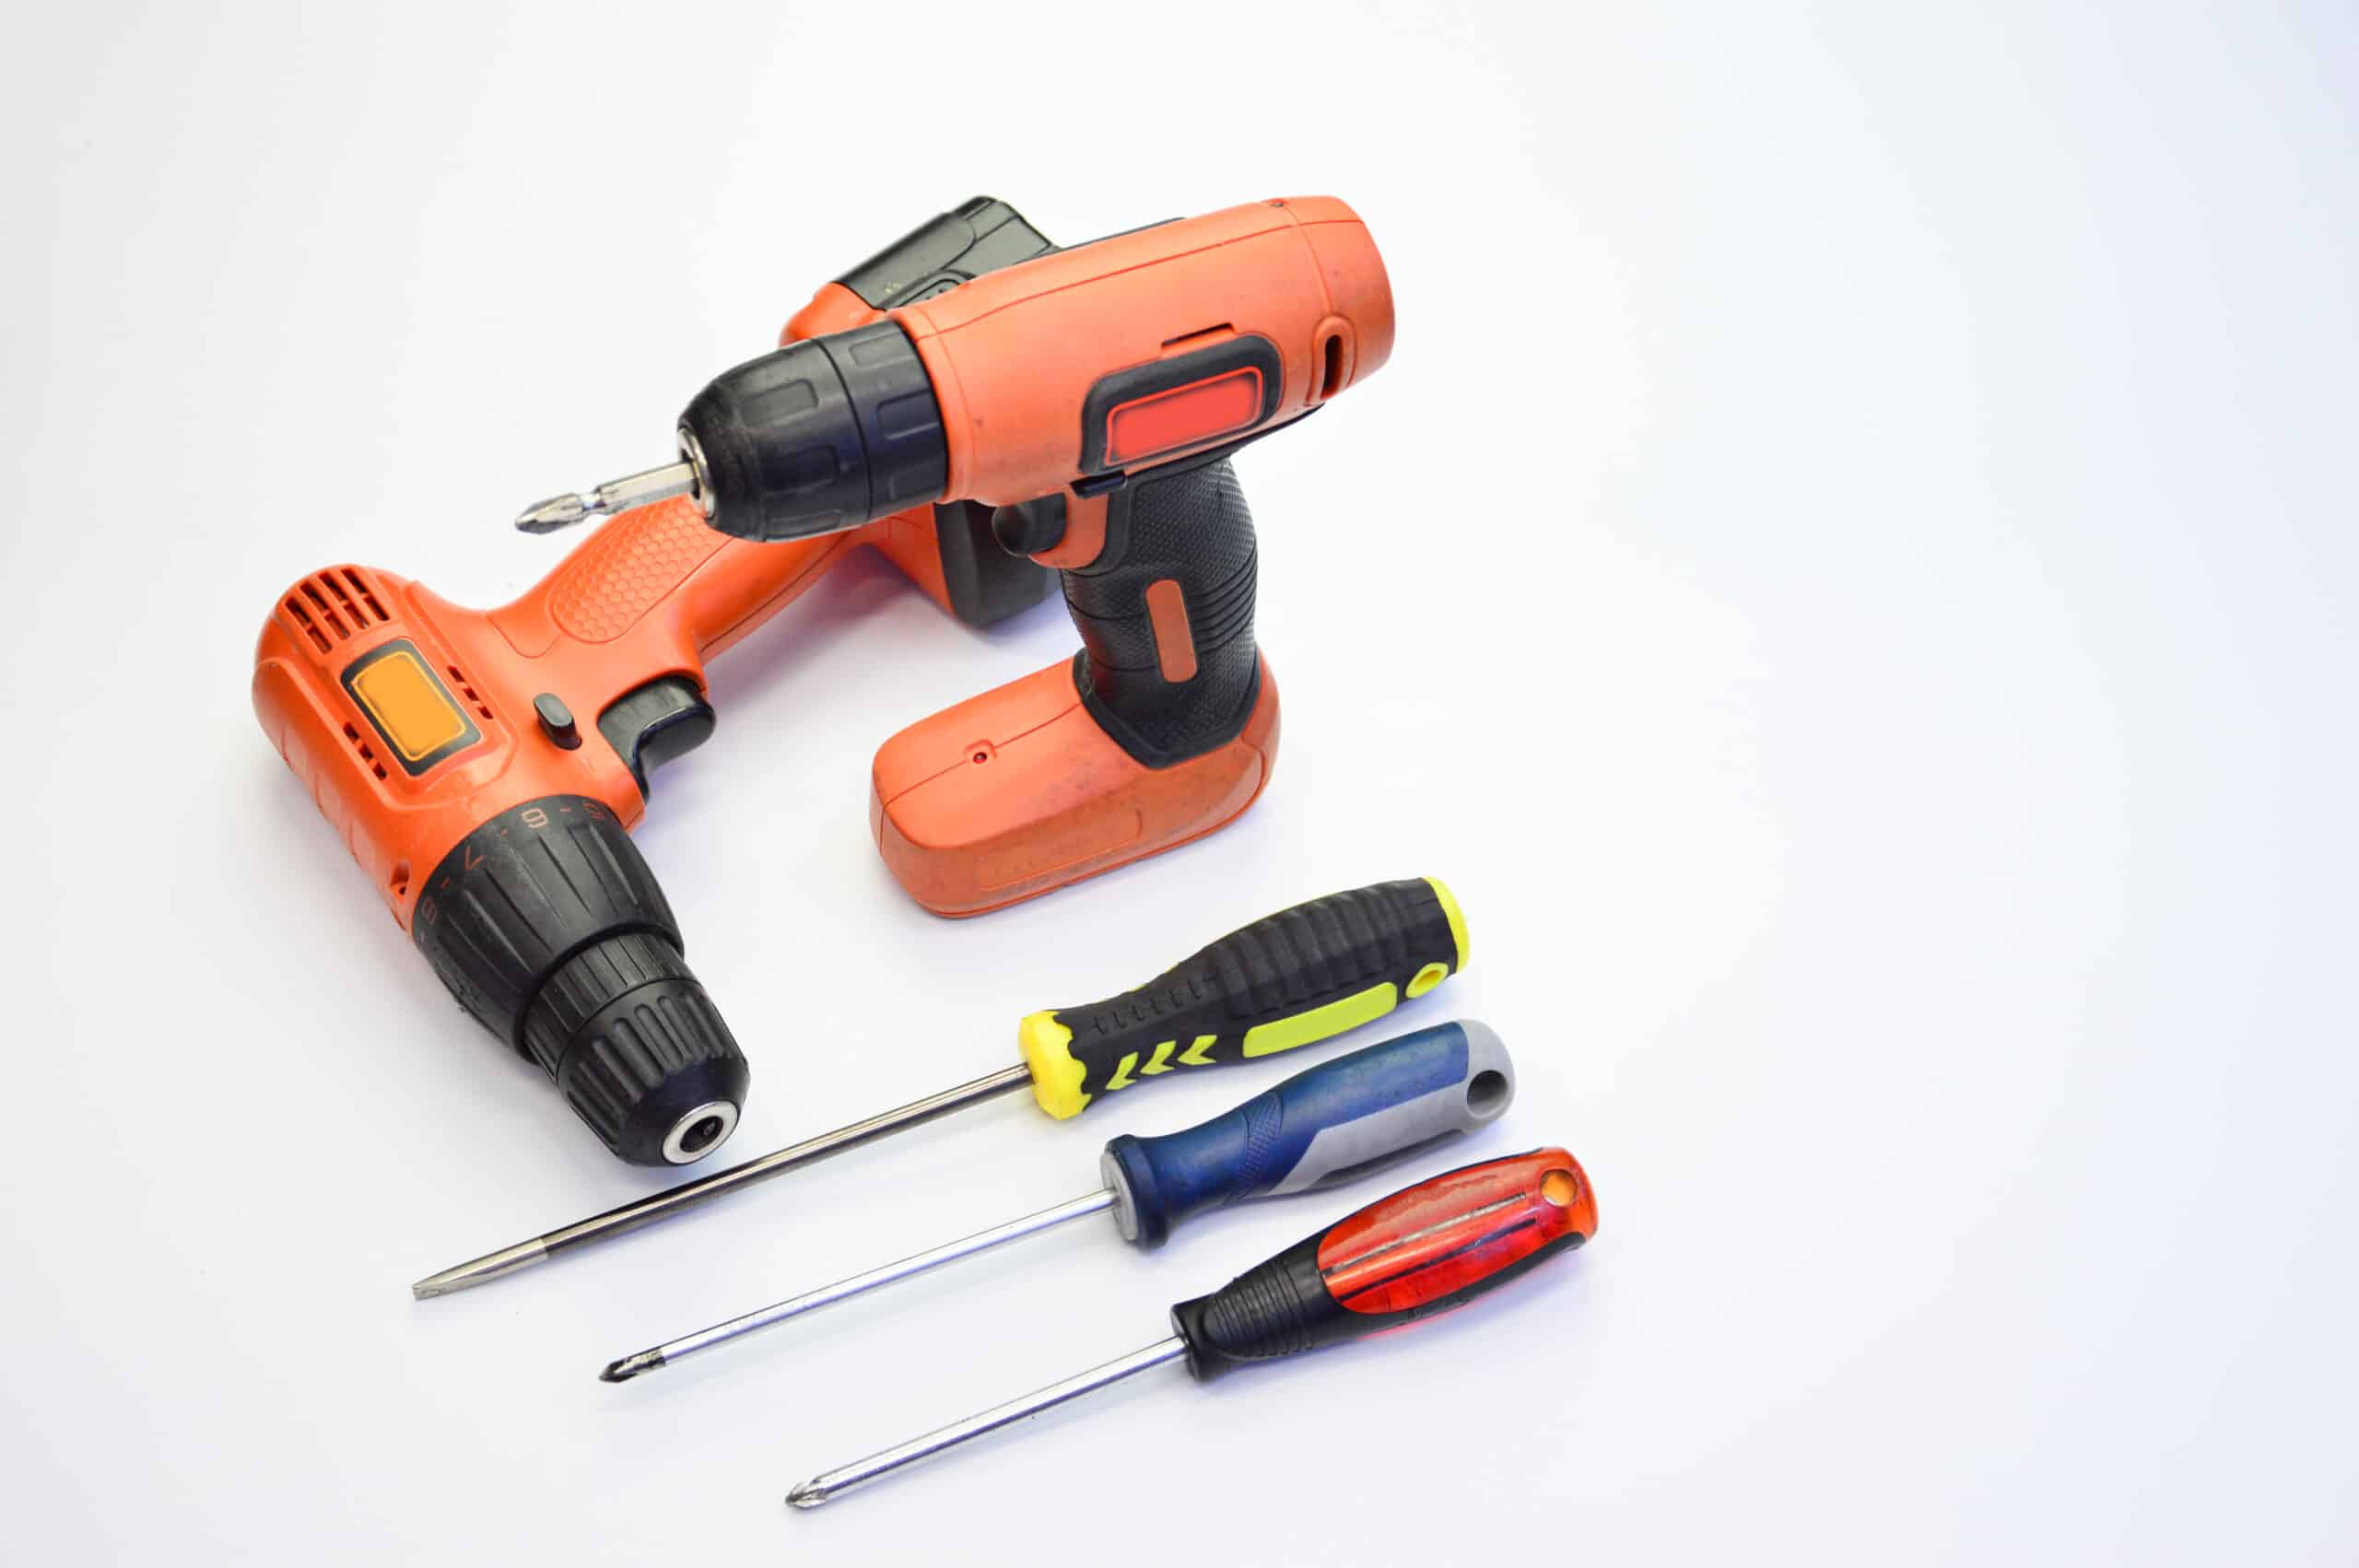 theprecisiontools.com : How can you magnetize a screwdriver?